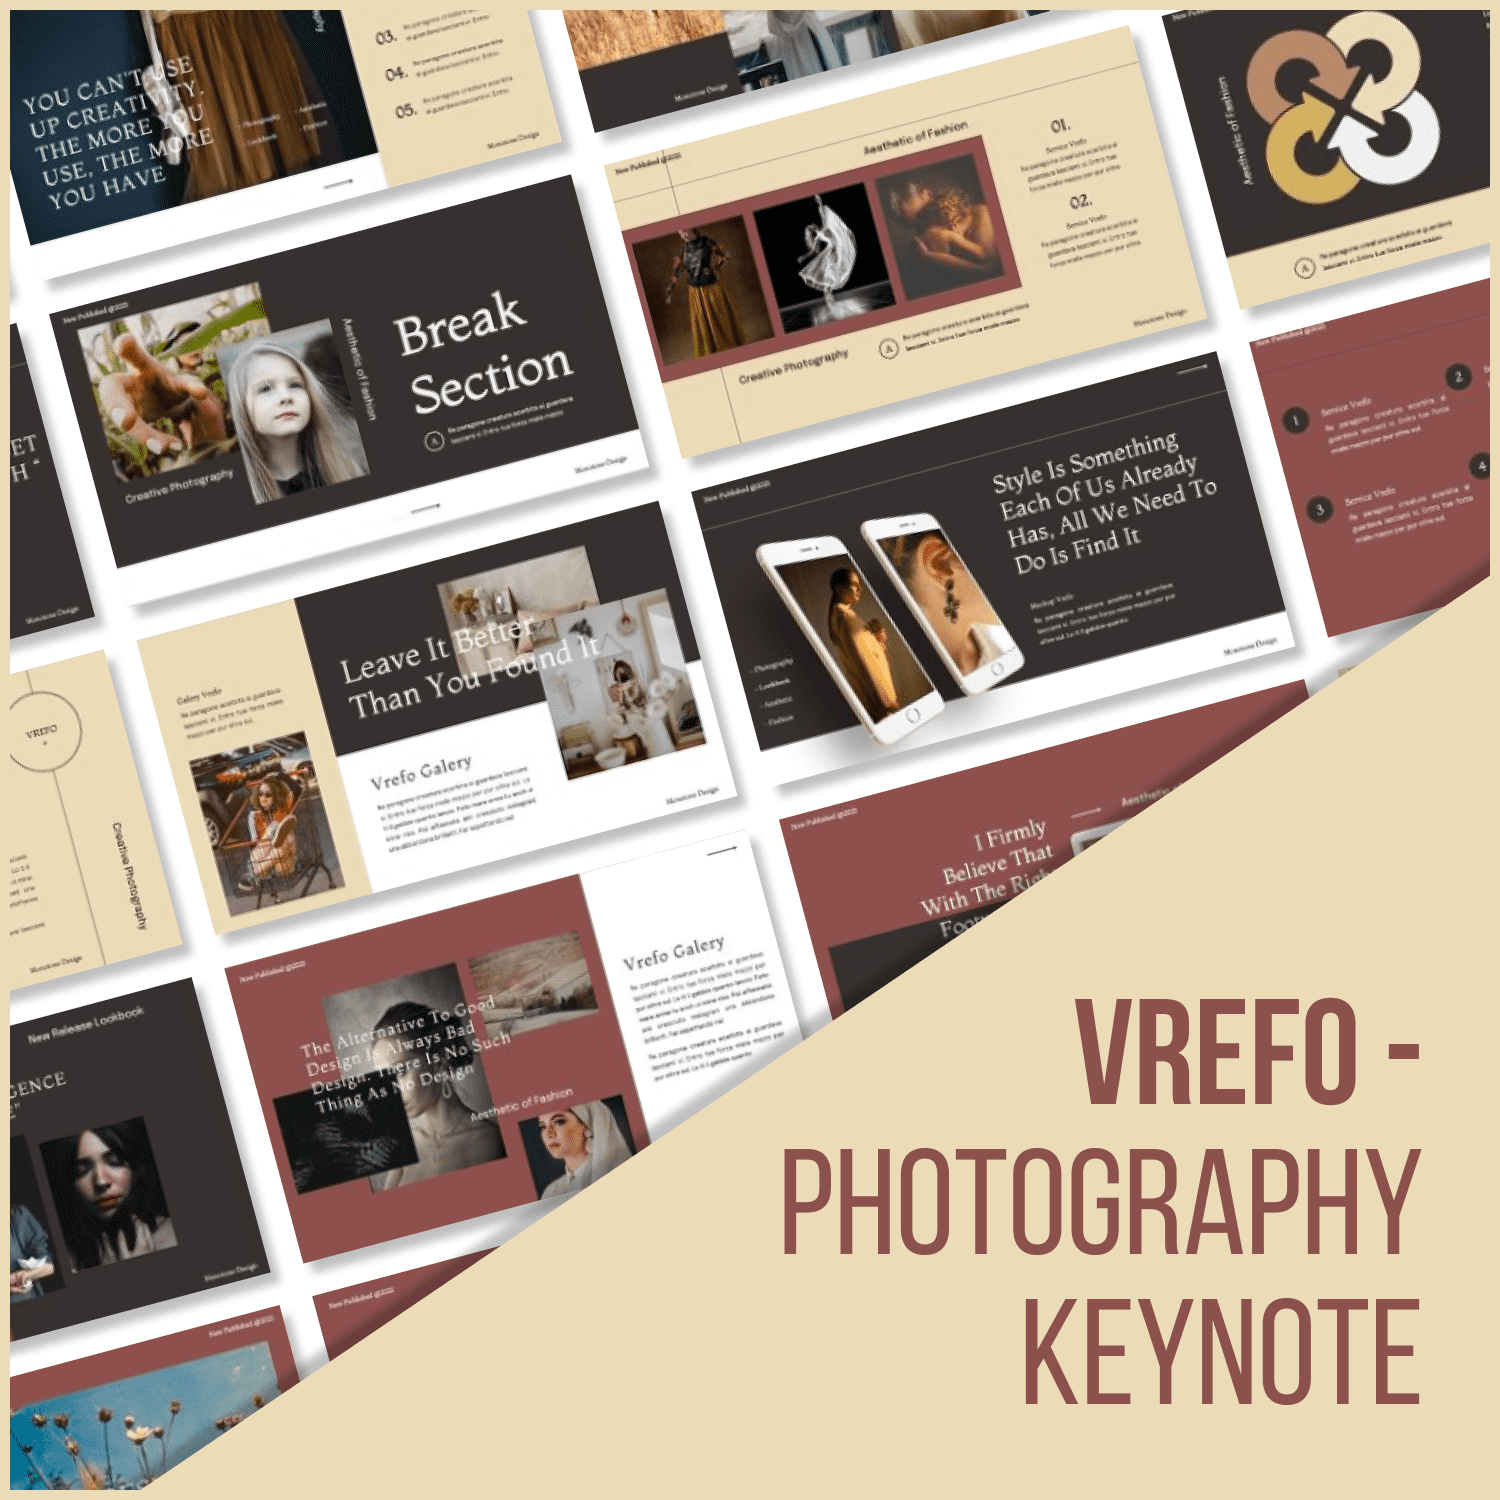 Vrefo - Photography Keynote by MasterBundles.